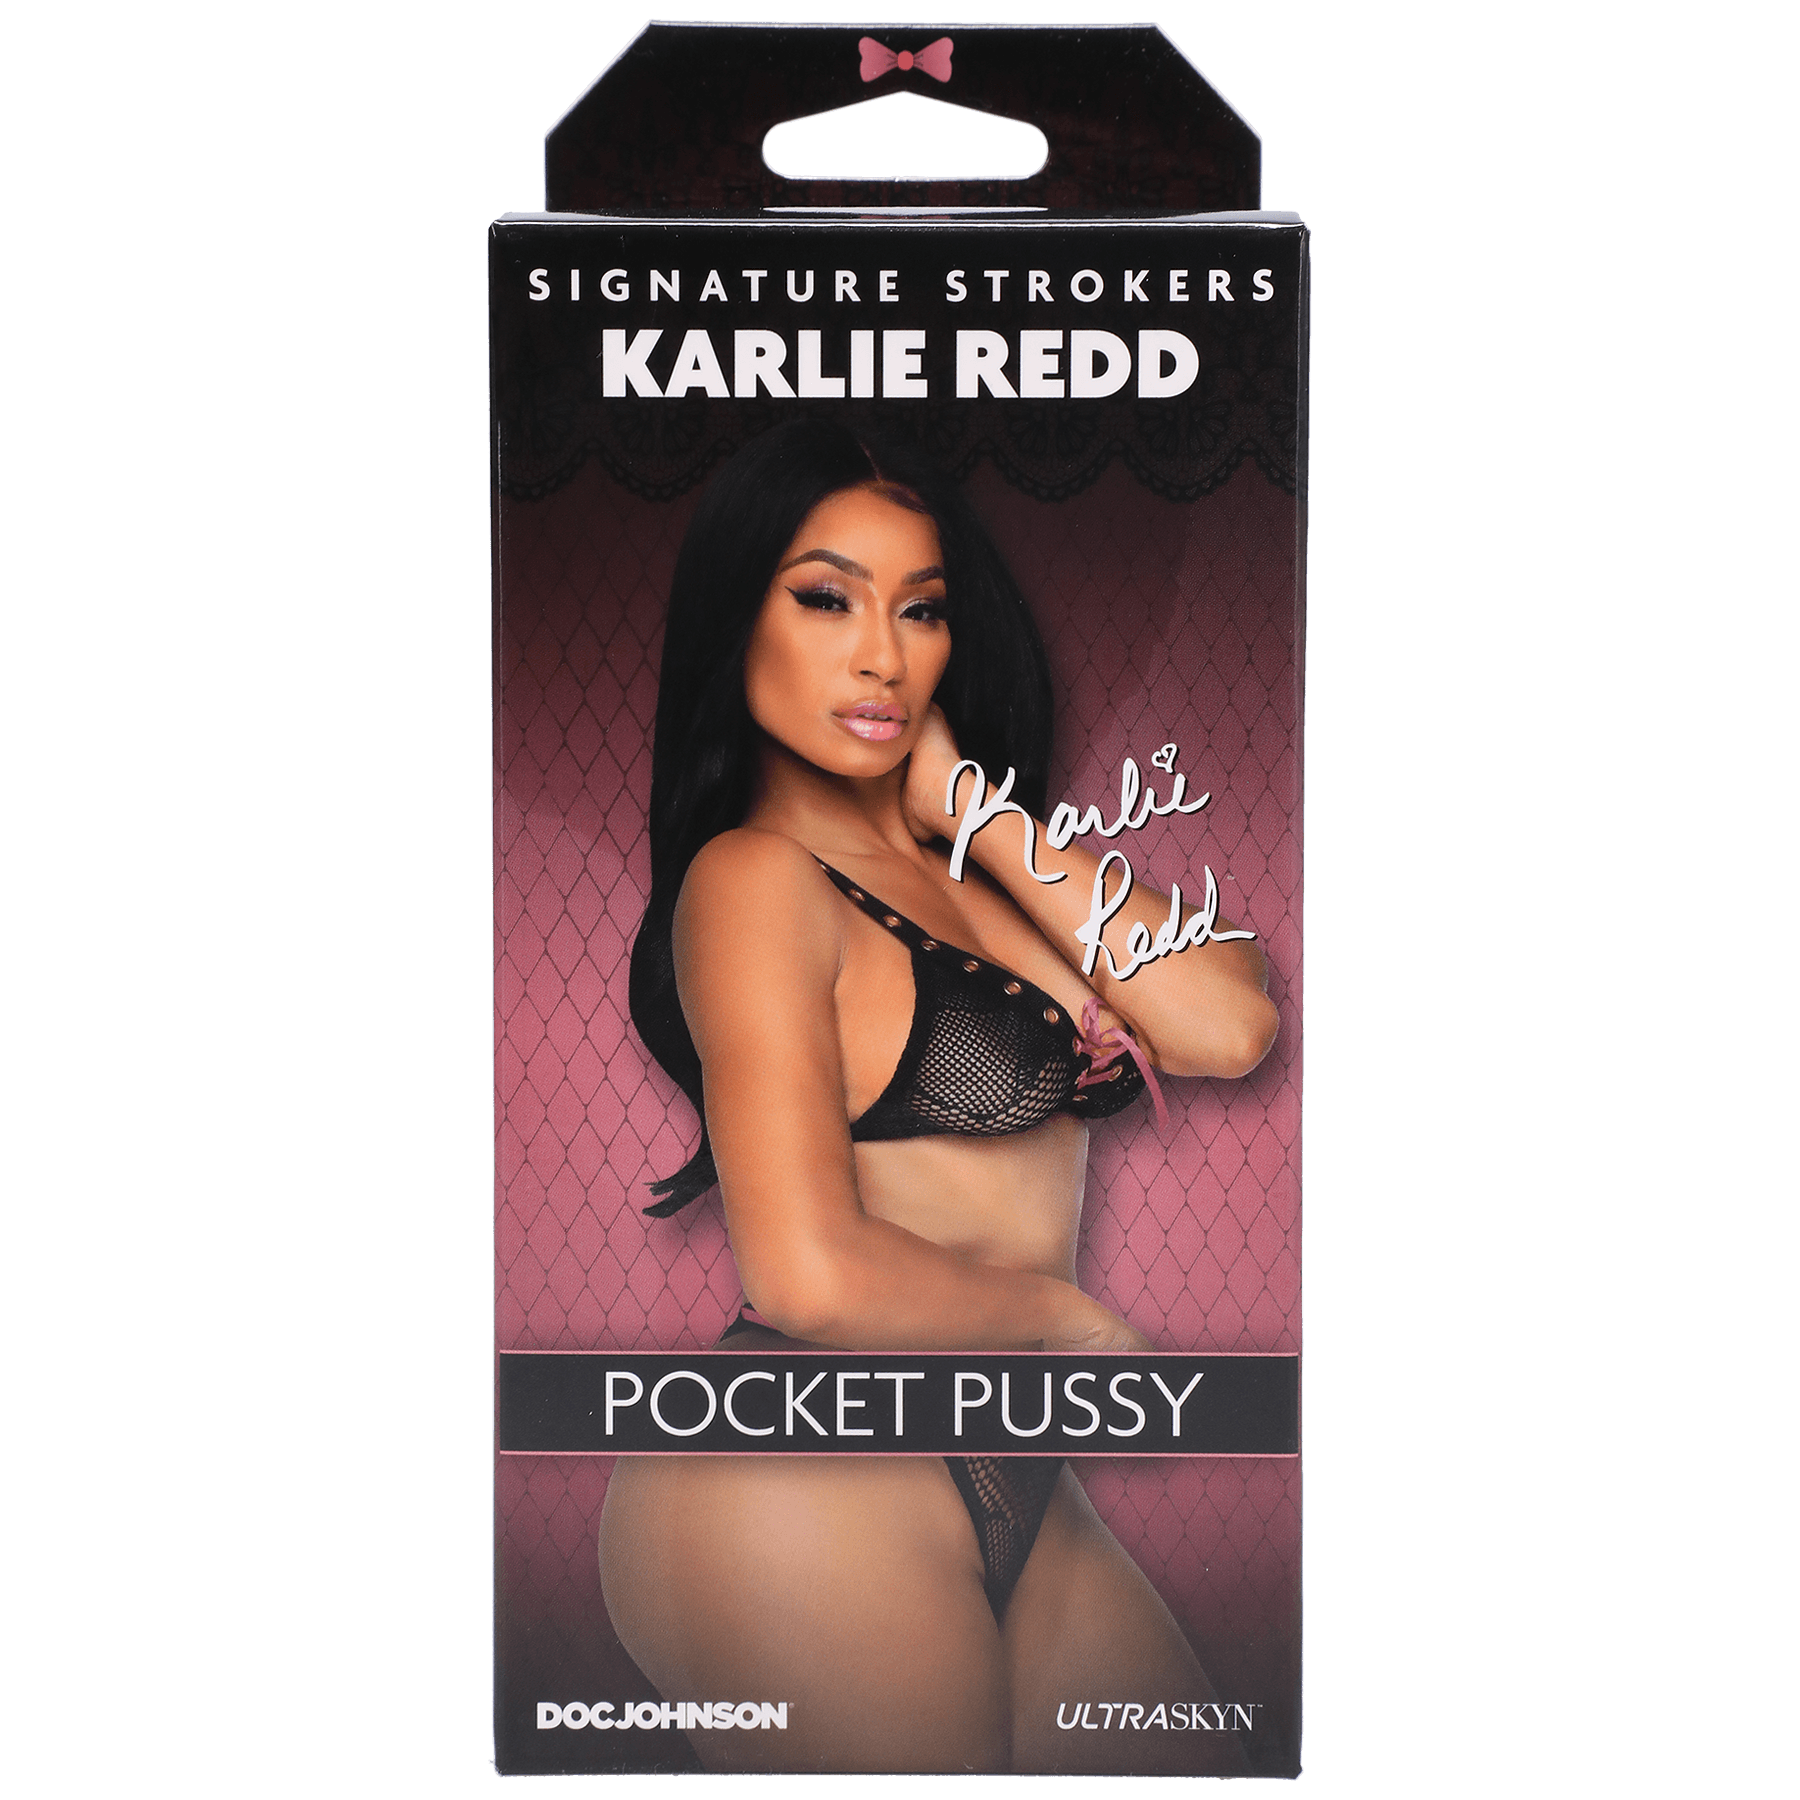 Doc Johnson Celebrity Girls Karlie Redd Pocket Pussy - Buy At Luxury Toy X - Free 3-Day Shipping